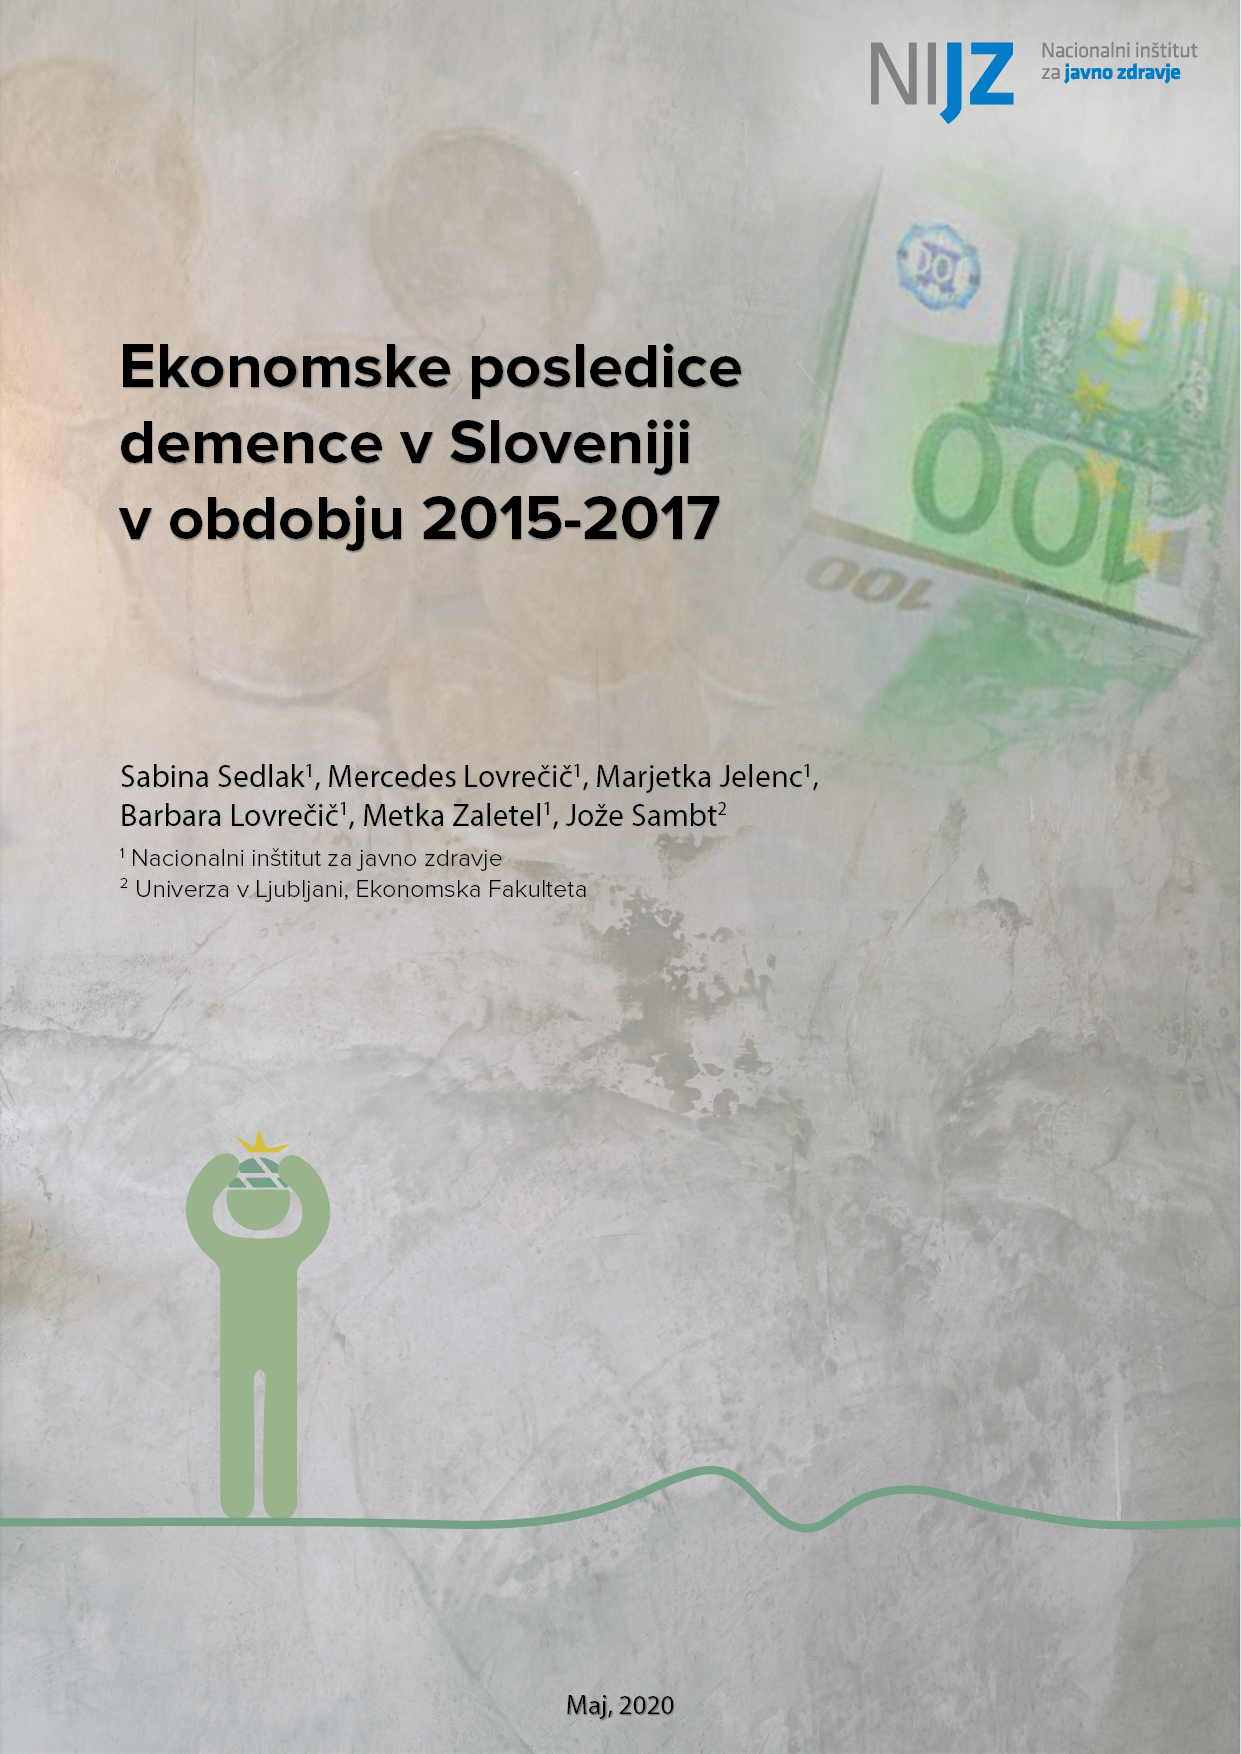 Ekonomske posledice demence v Sloveniji v obdobju 2015-2017